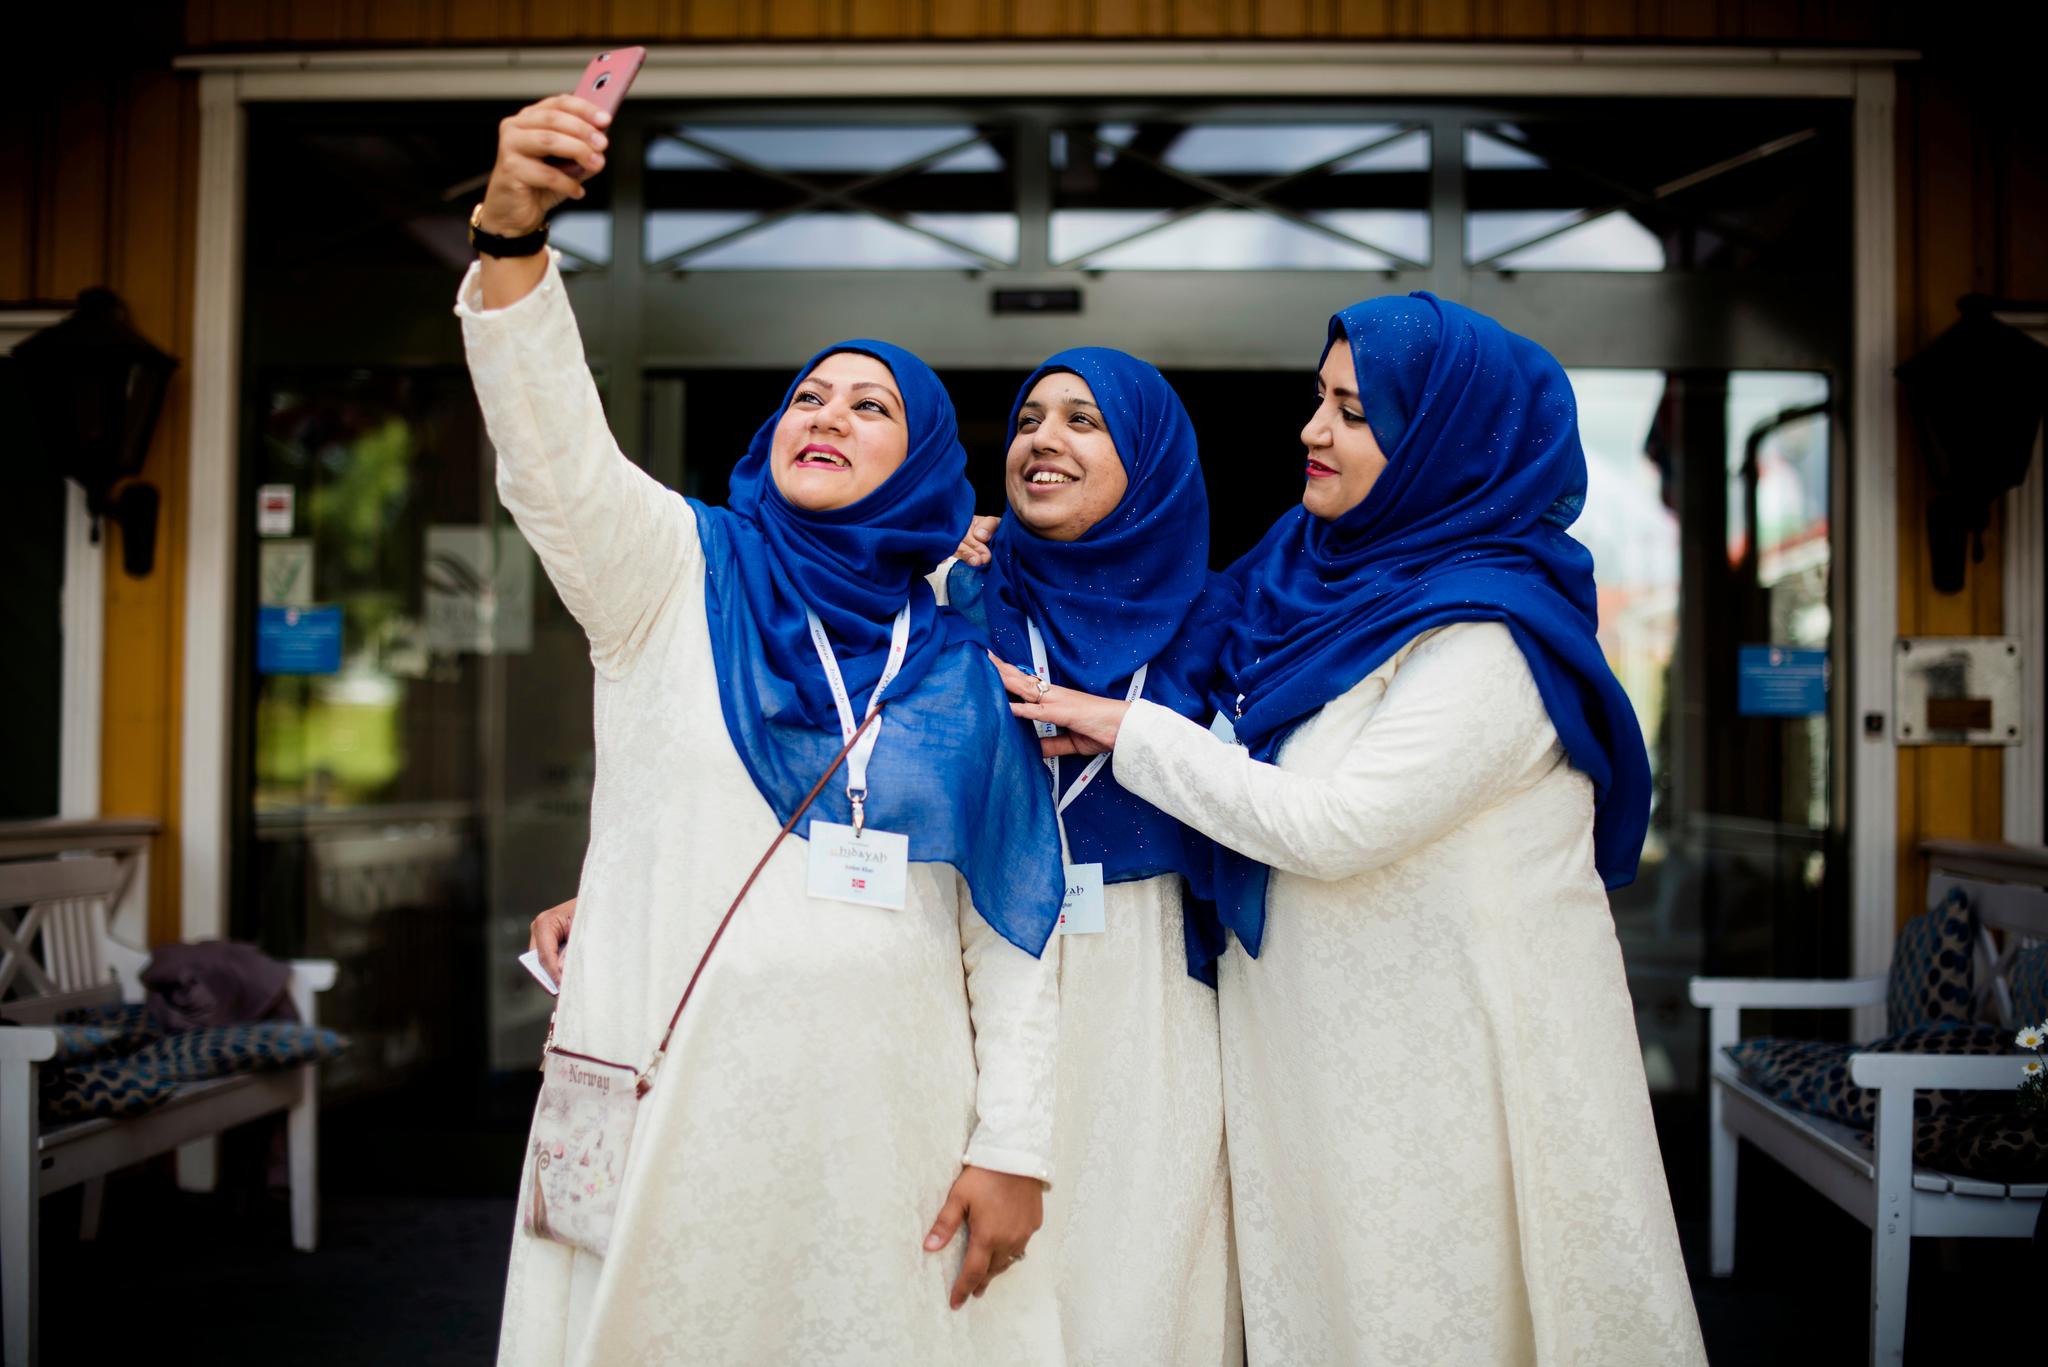  Amber Khan, Ayesha Khan og Faria Asghar benytter en pause til å forevige helgens begivenheter med en nøye komponert selfie. De har pyntet seg med matchende hodeplagg for anledningen.